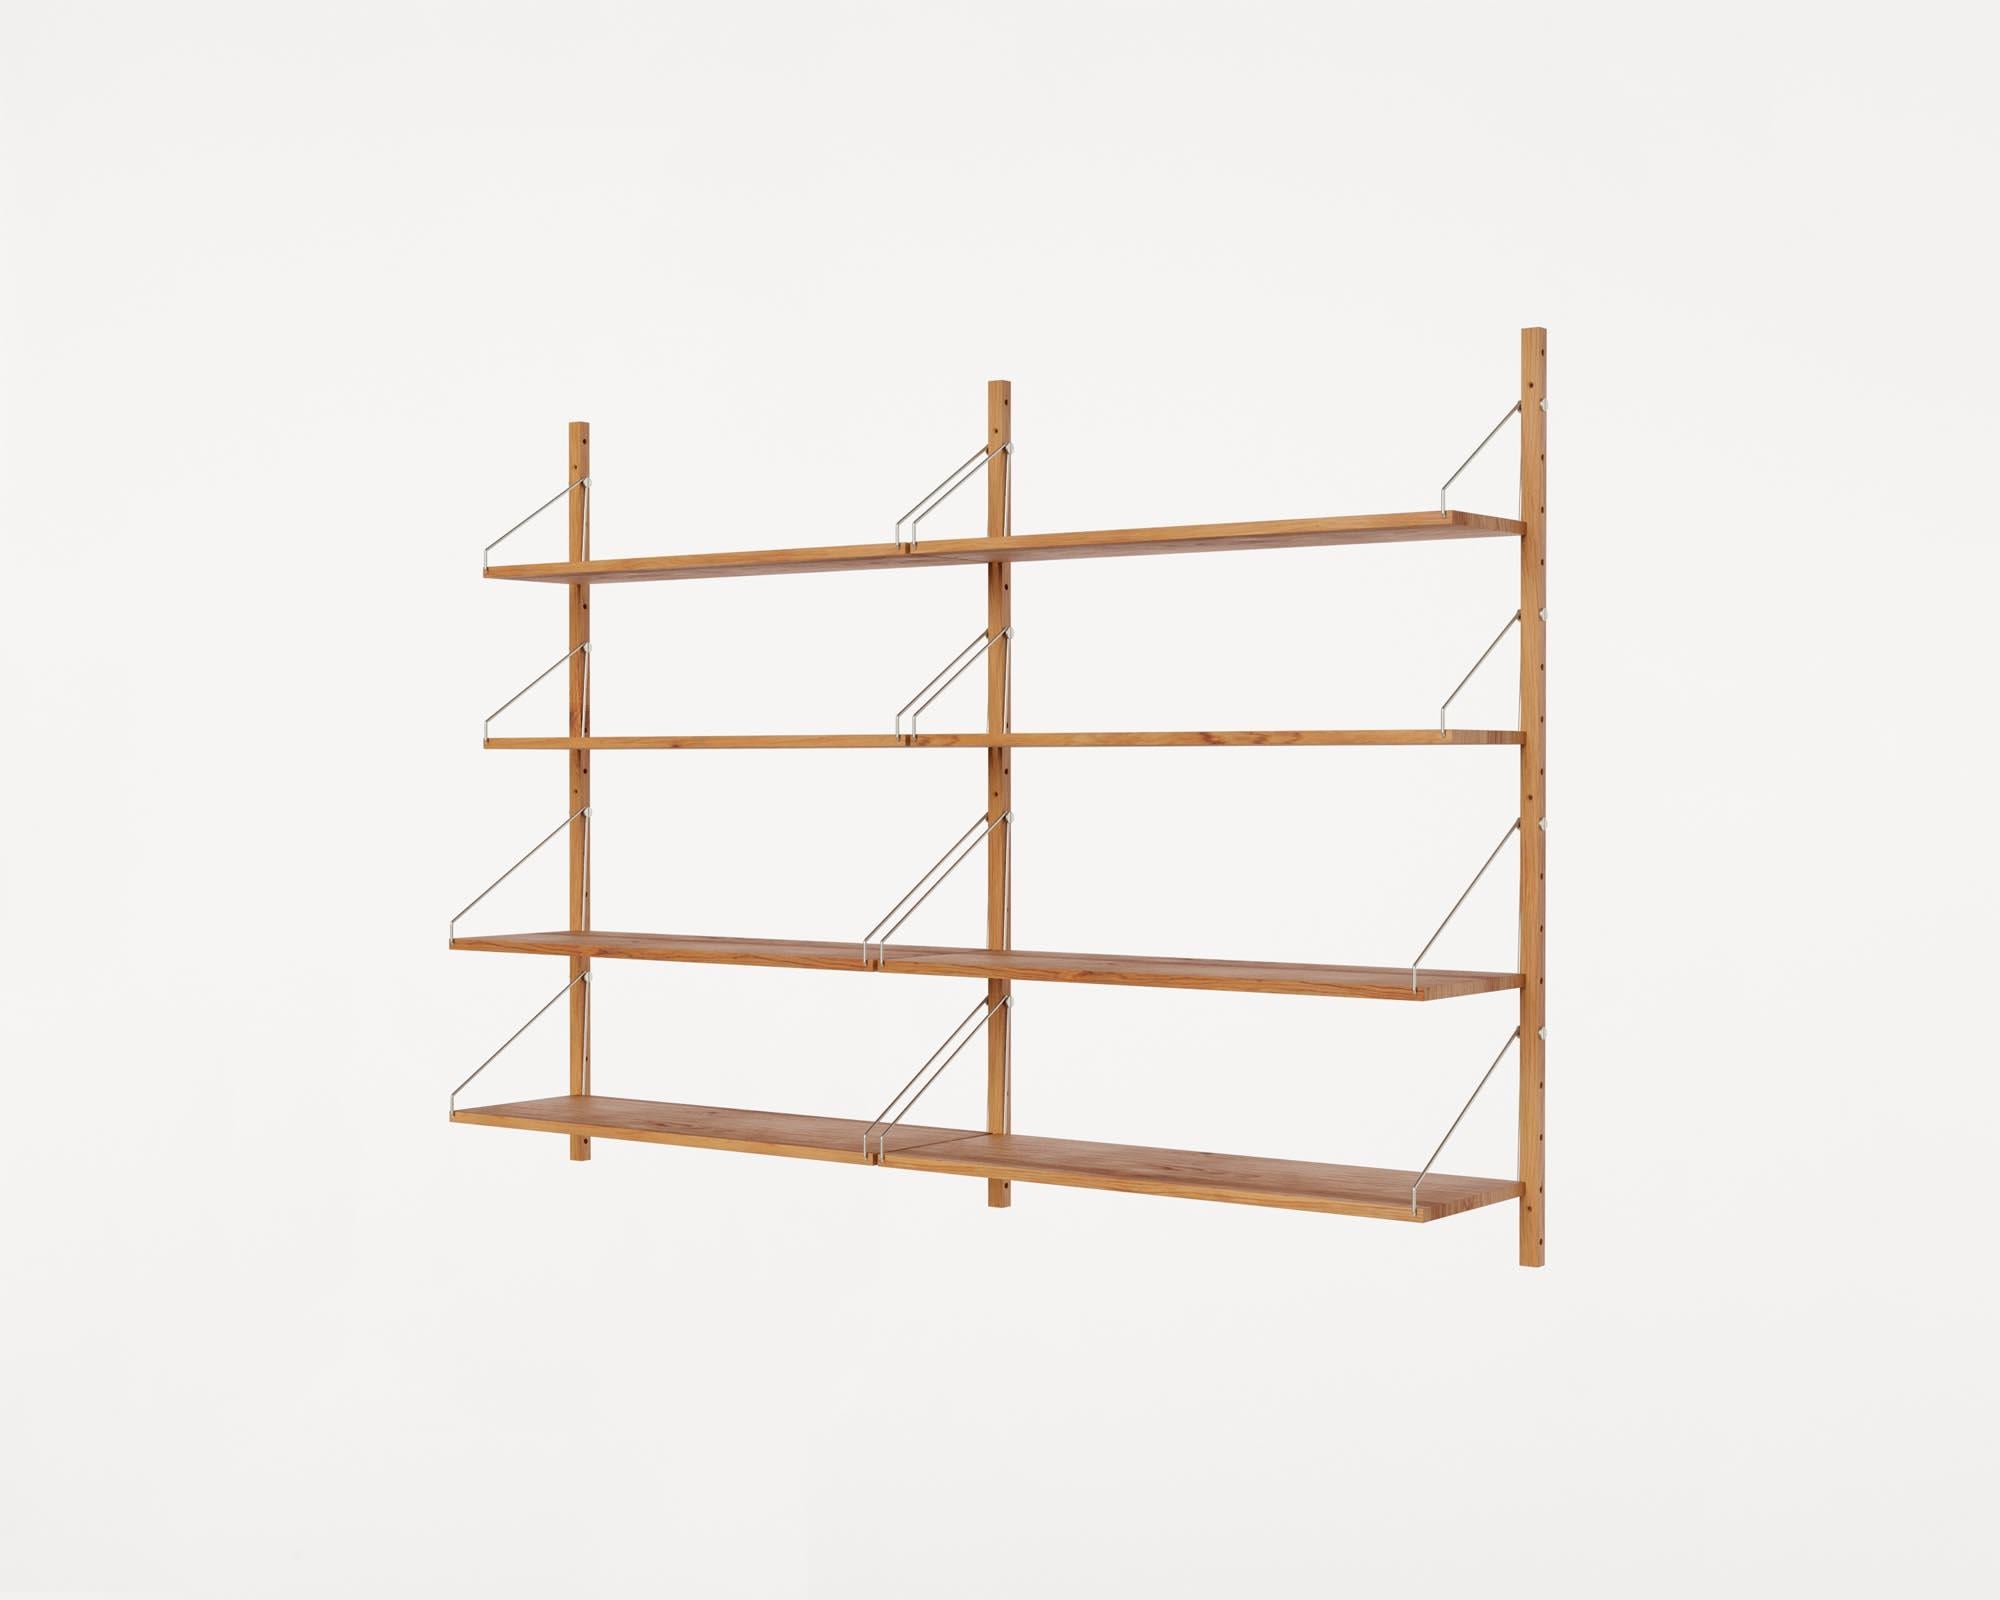 Zeitgenssisches minimalistisches Holz-Wandregal Bibliotheks-Doppelreihiges Regal (Skandinavische Moderne)